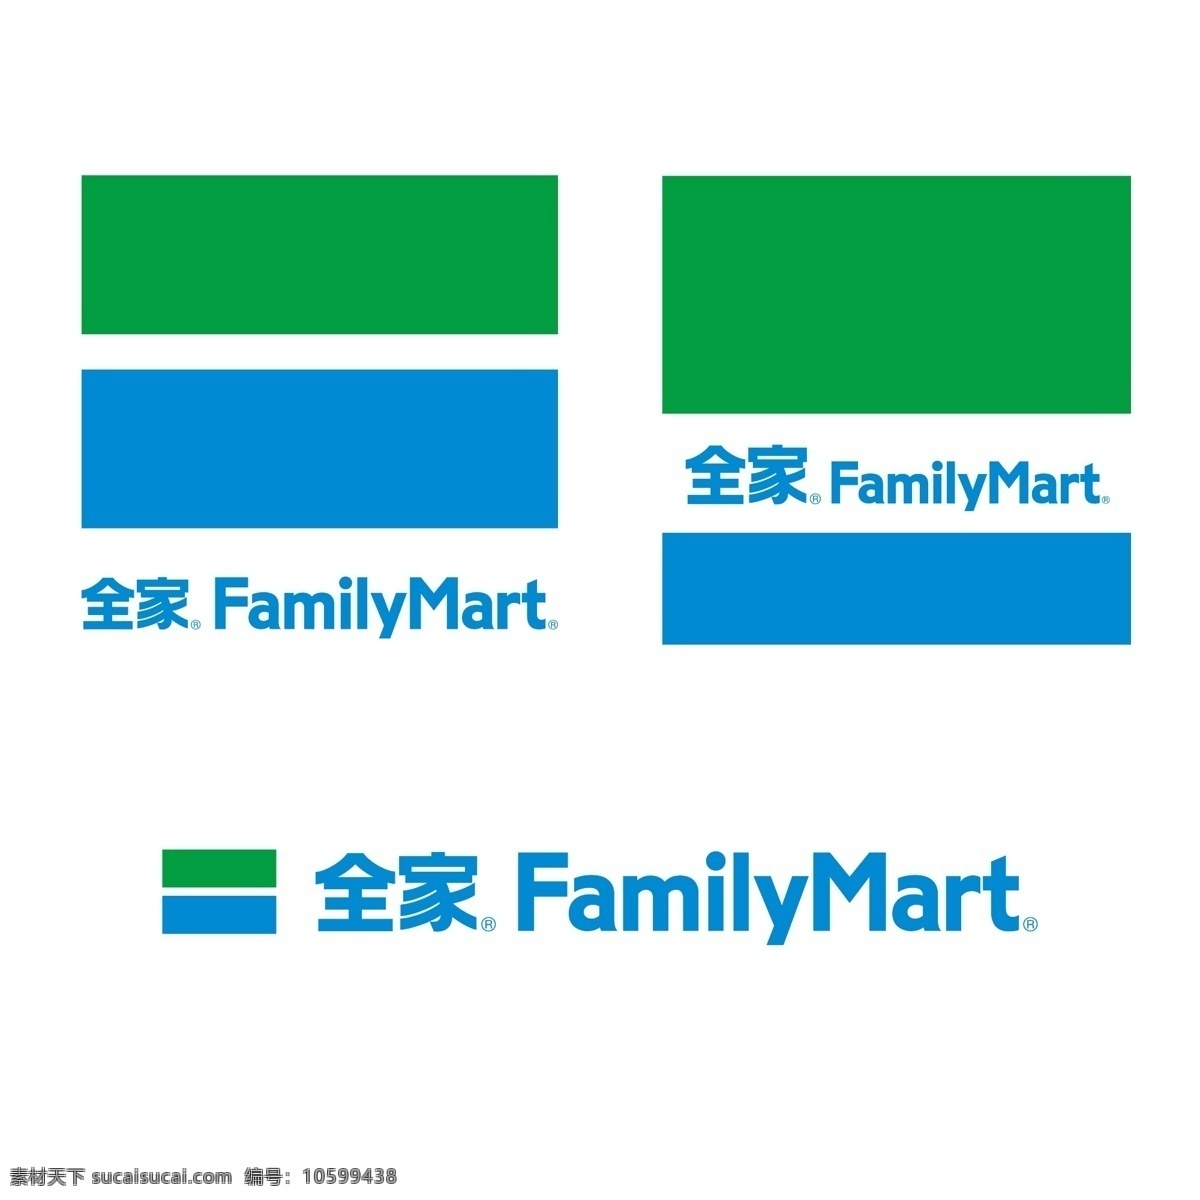 全家 logo 超市 卖场 便利店 全家便利店 全家logo 日本便利店 超级市场 标志图标 企业 标志